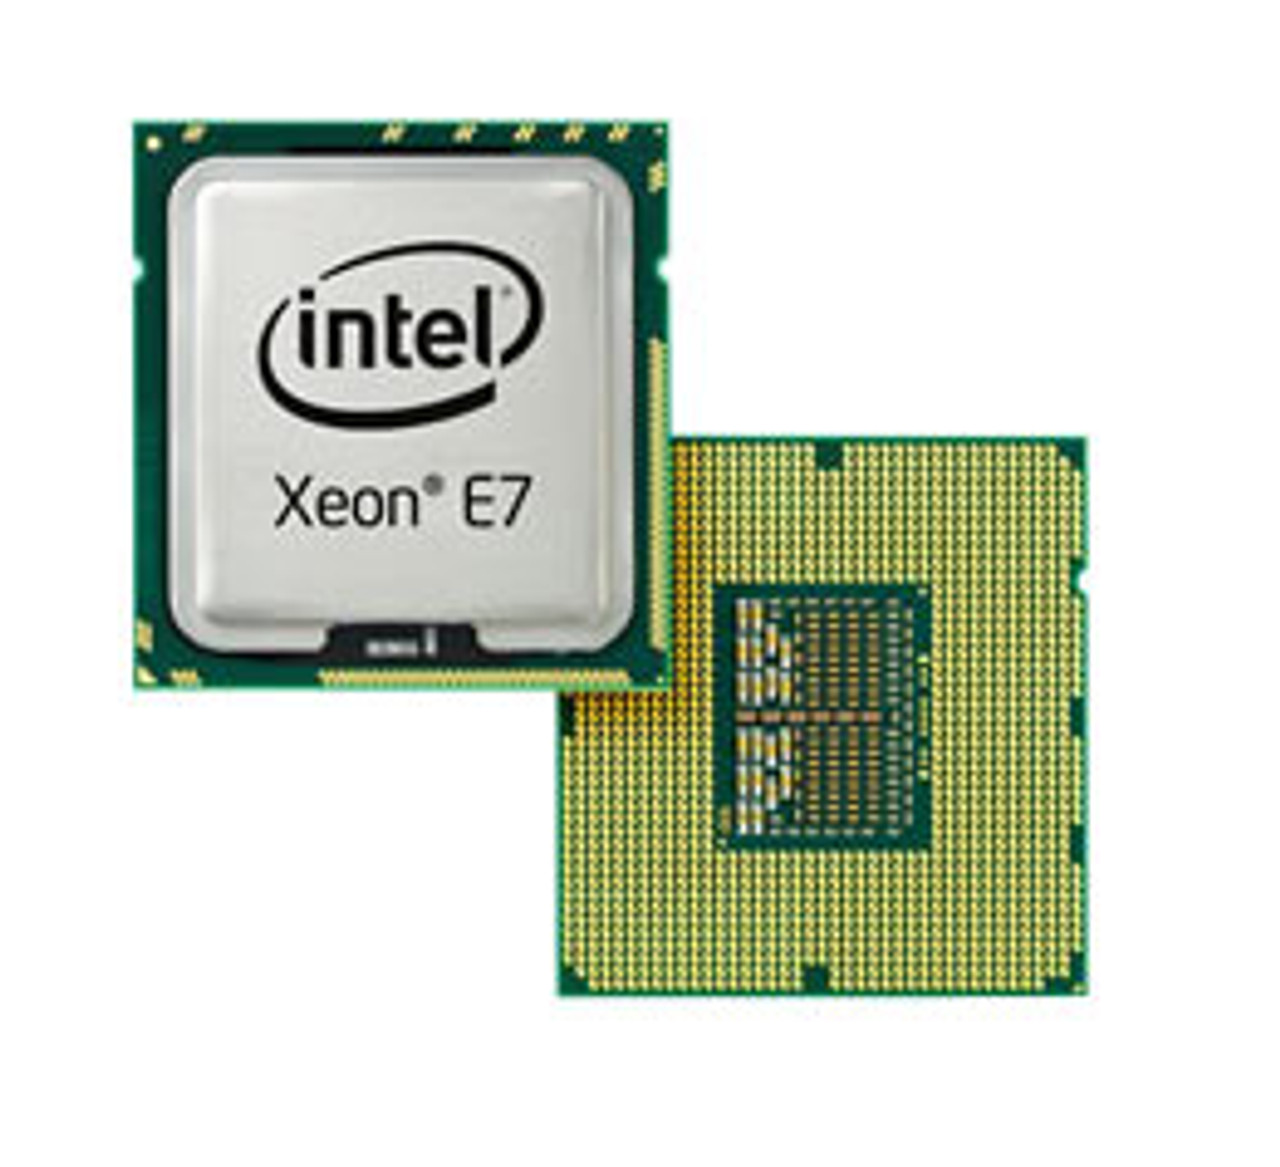 SLC3L Intel Xeon E7-4807 6-Core 1.86GHz 4.80GT/s QPI 18MB L3 Cache